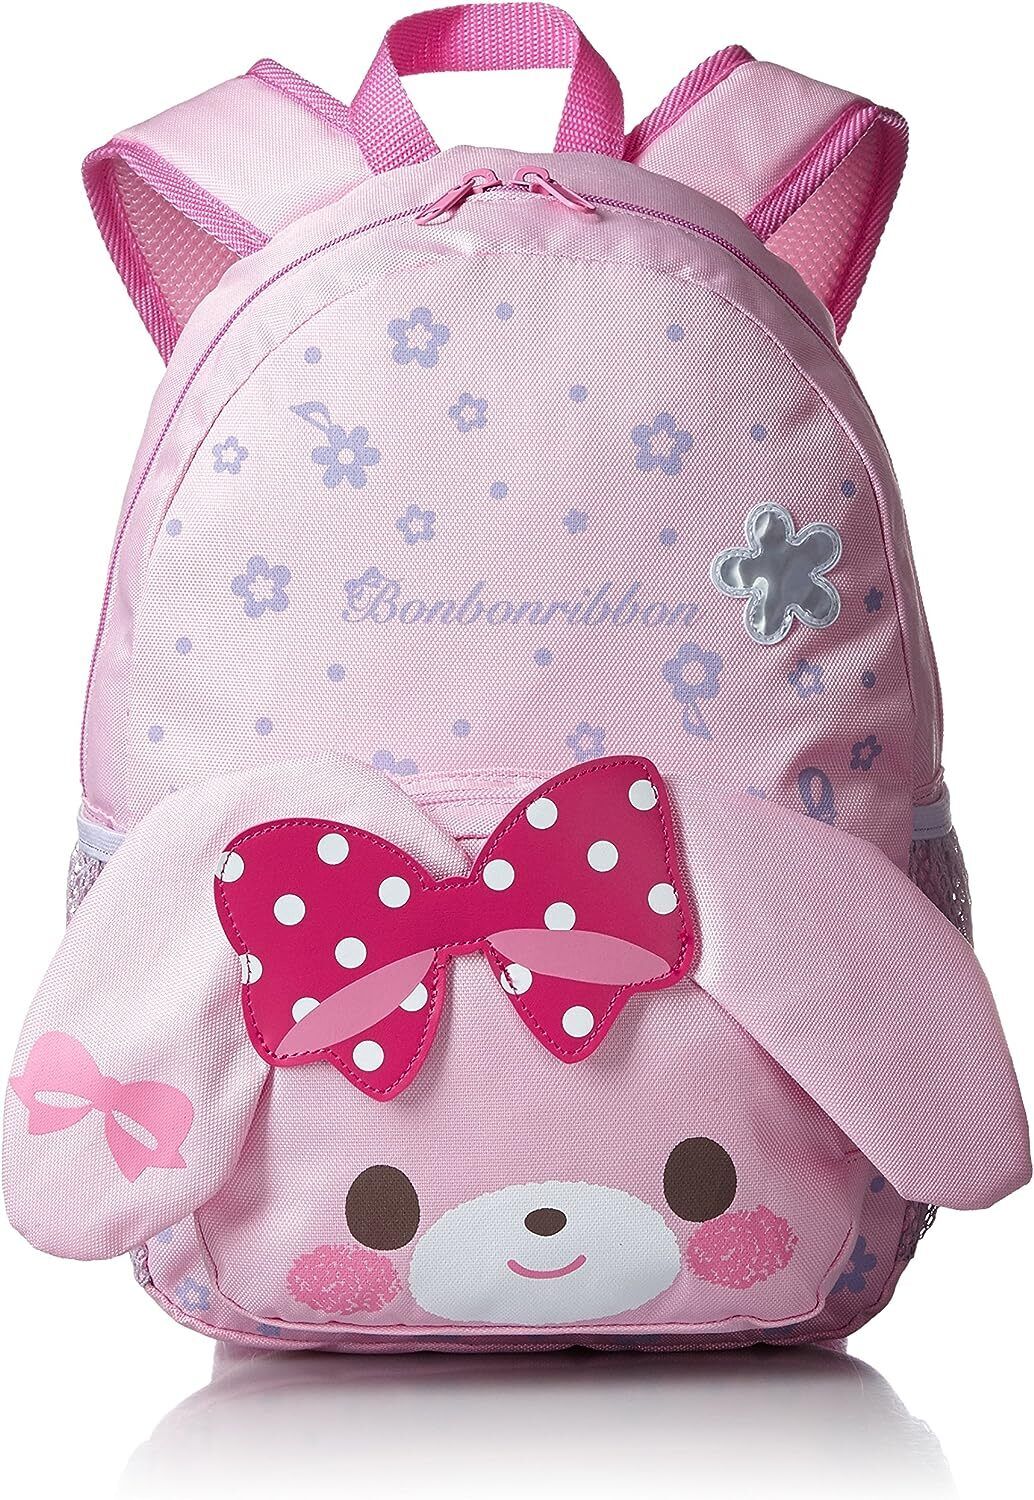 Sanrio BonBonRibbon die cut Backpack School Bag For Kids Pink Japan Kawaii New